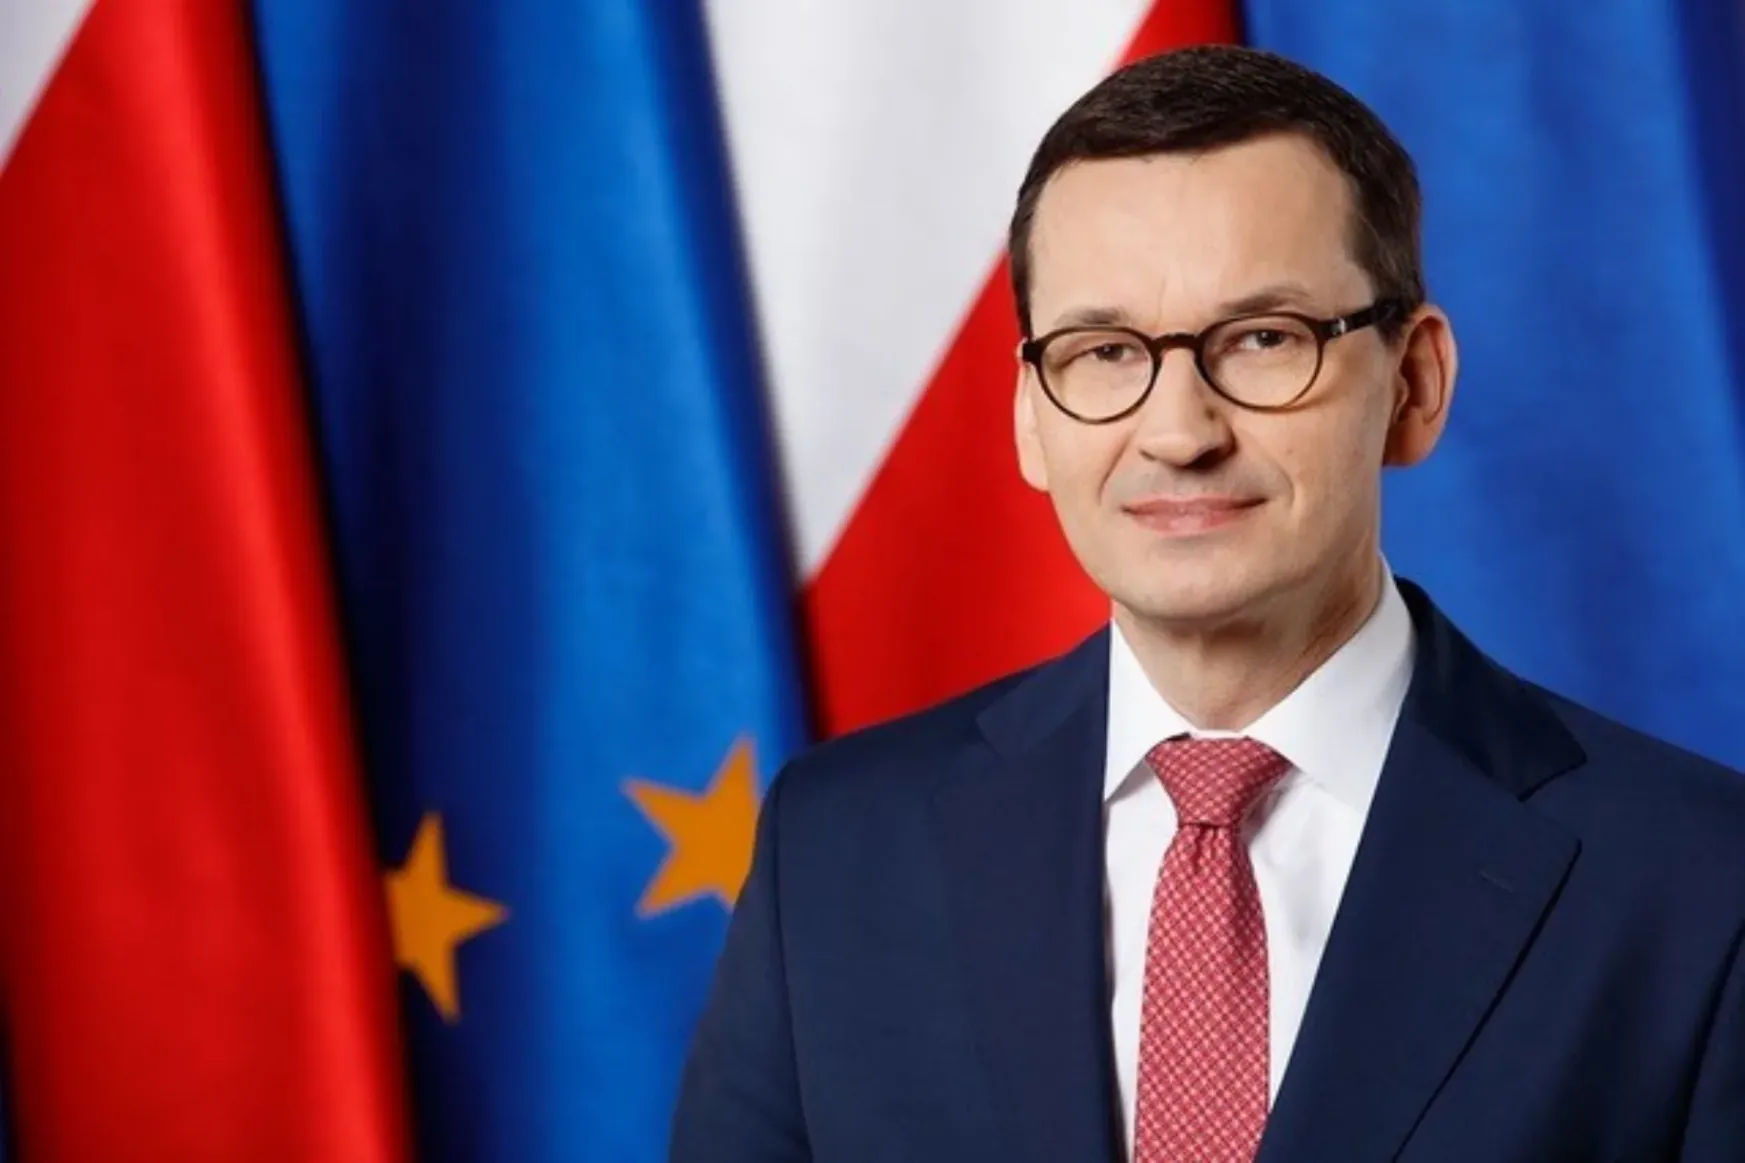 Mateusz Morawiecki lengyel miniszterelnök véleménycikke: A háború első évének öt legfontosabb tanulsága